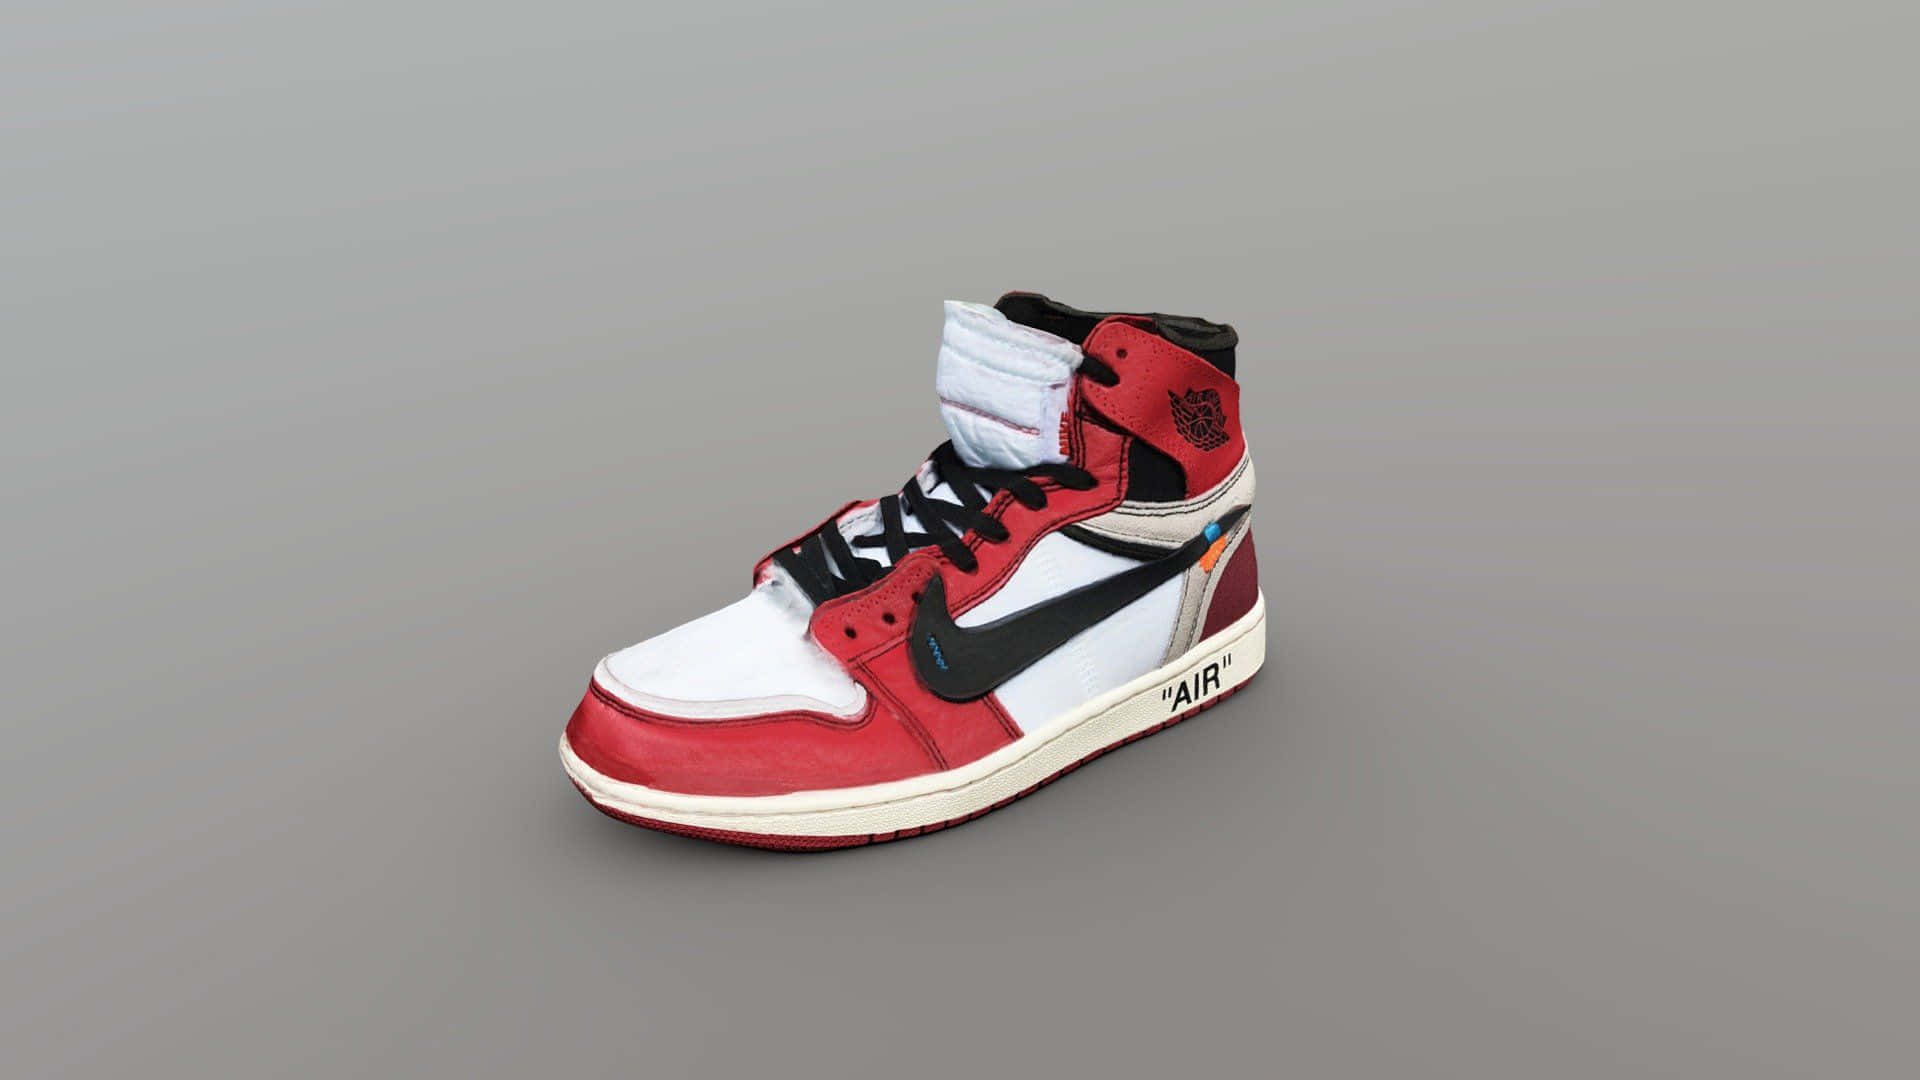 Saltaalto Y Destácate Con Zapatos Jordan Rojos. Fondo de pantalla